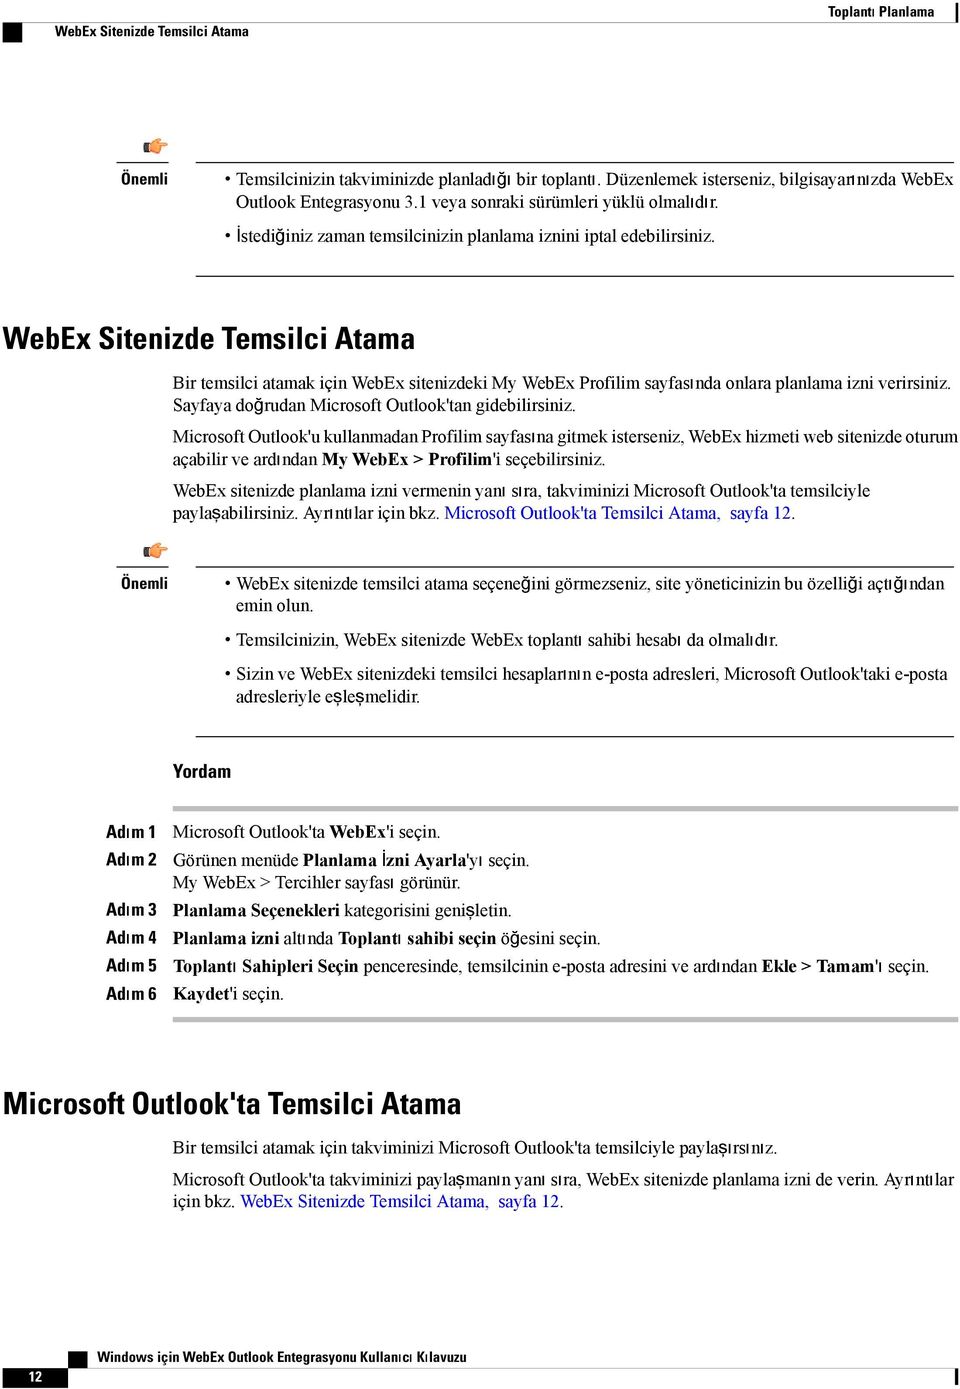 WebEx Sitenizde Temsilci Atama Bir temsilci atamak için WebEx sitenizdeki My WebEx Profilim sayfasında onlara planlama izni verirsiniz. Sayfaya doğrudan Microsoft Outlook'tan gidebilirsiniz.